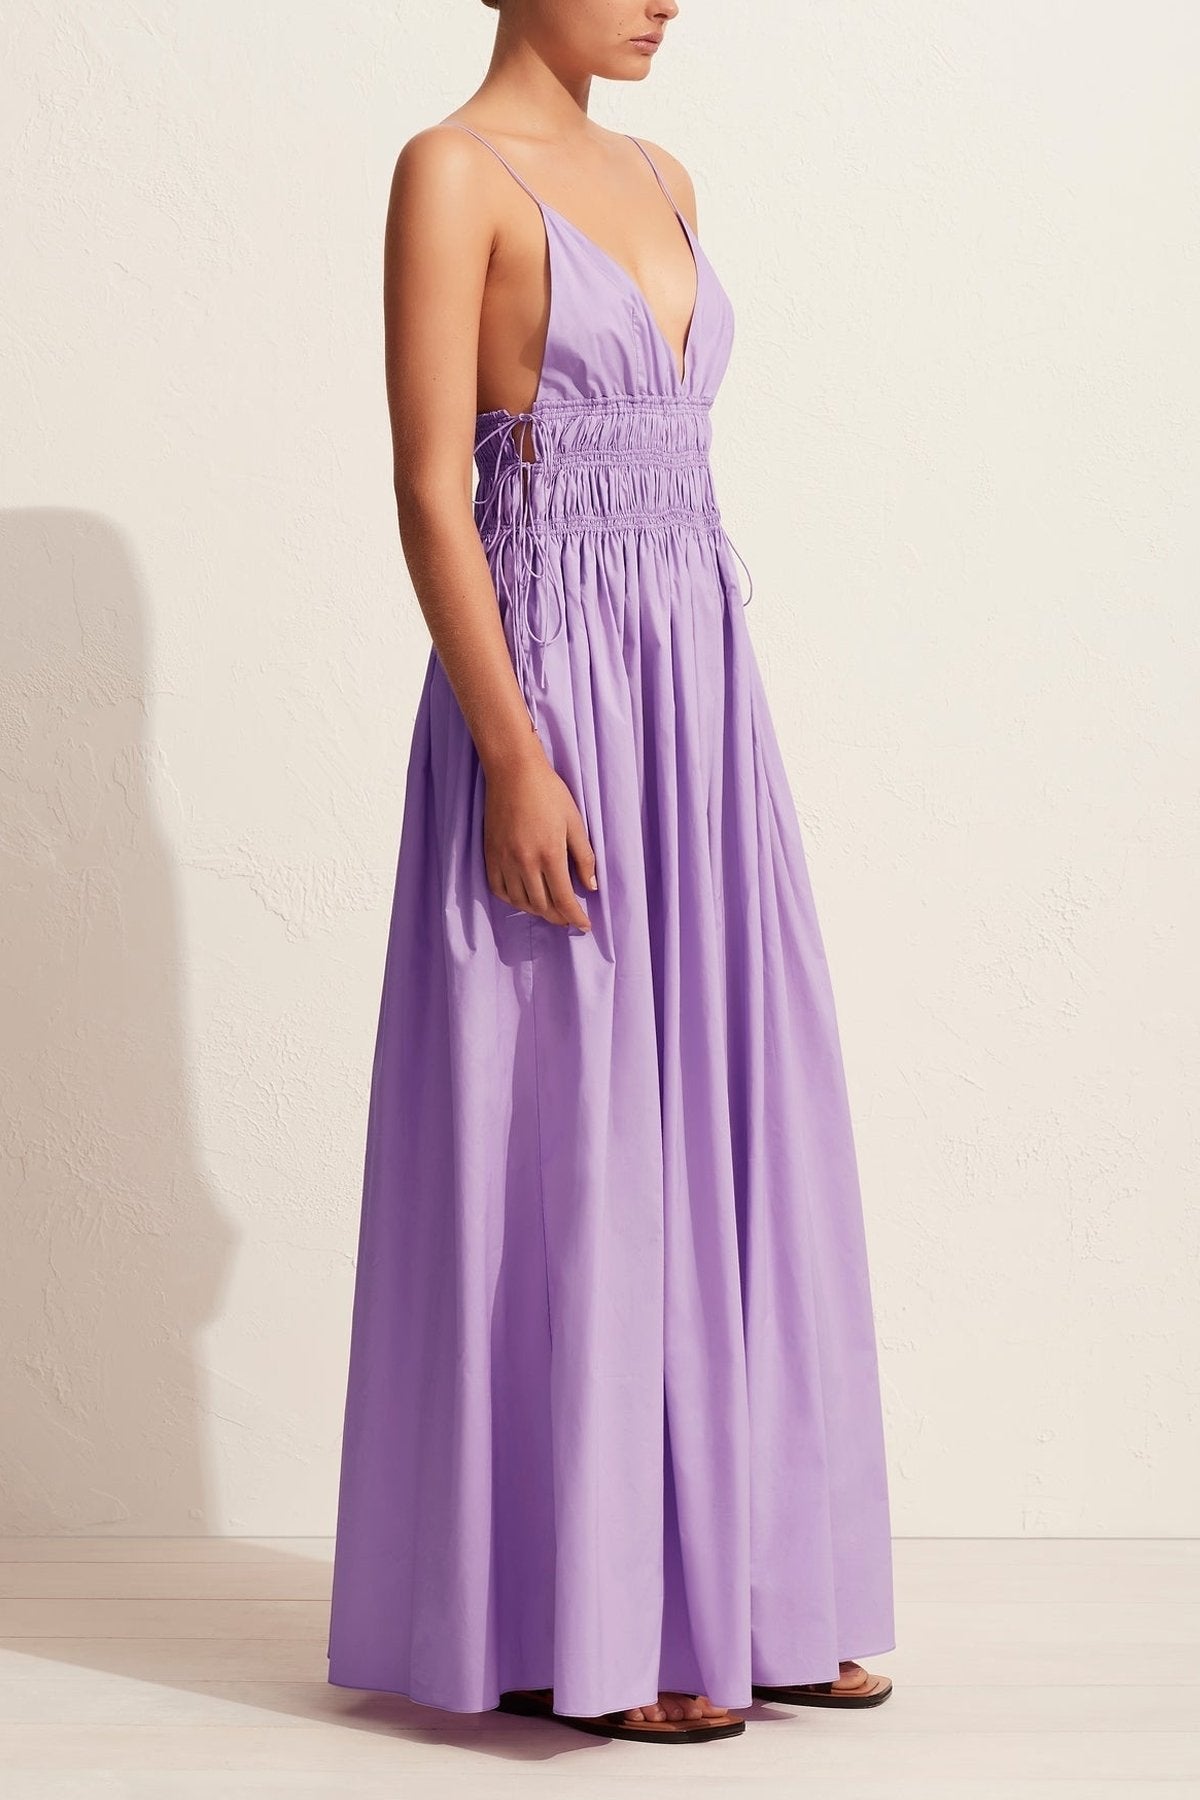 Shirred Triangle Dress in Violet - shop-olivia.com